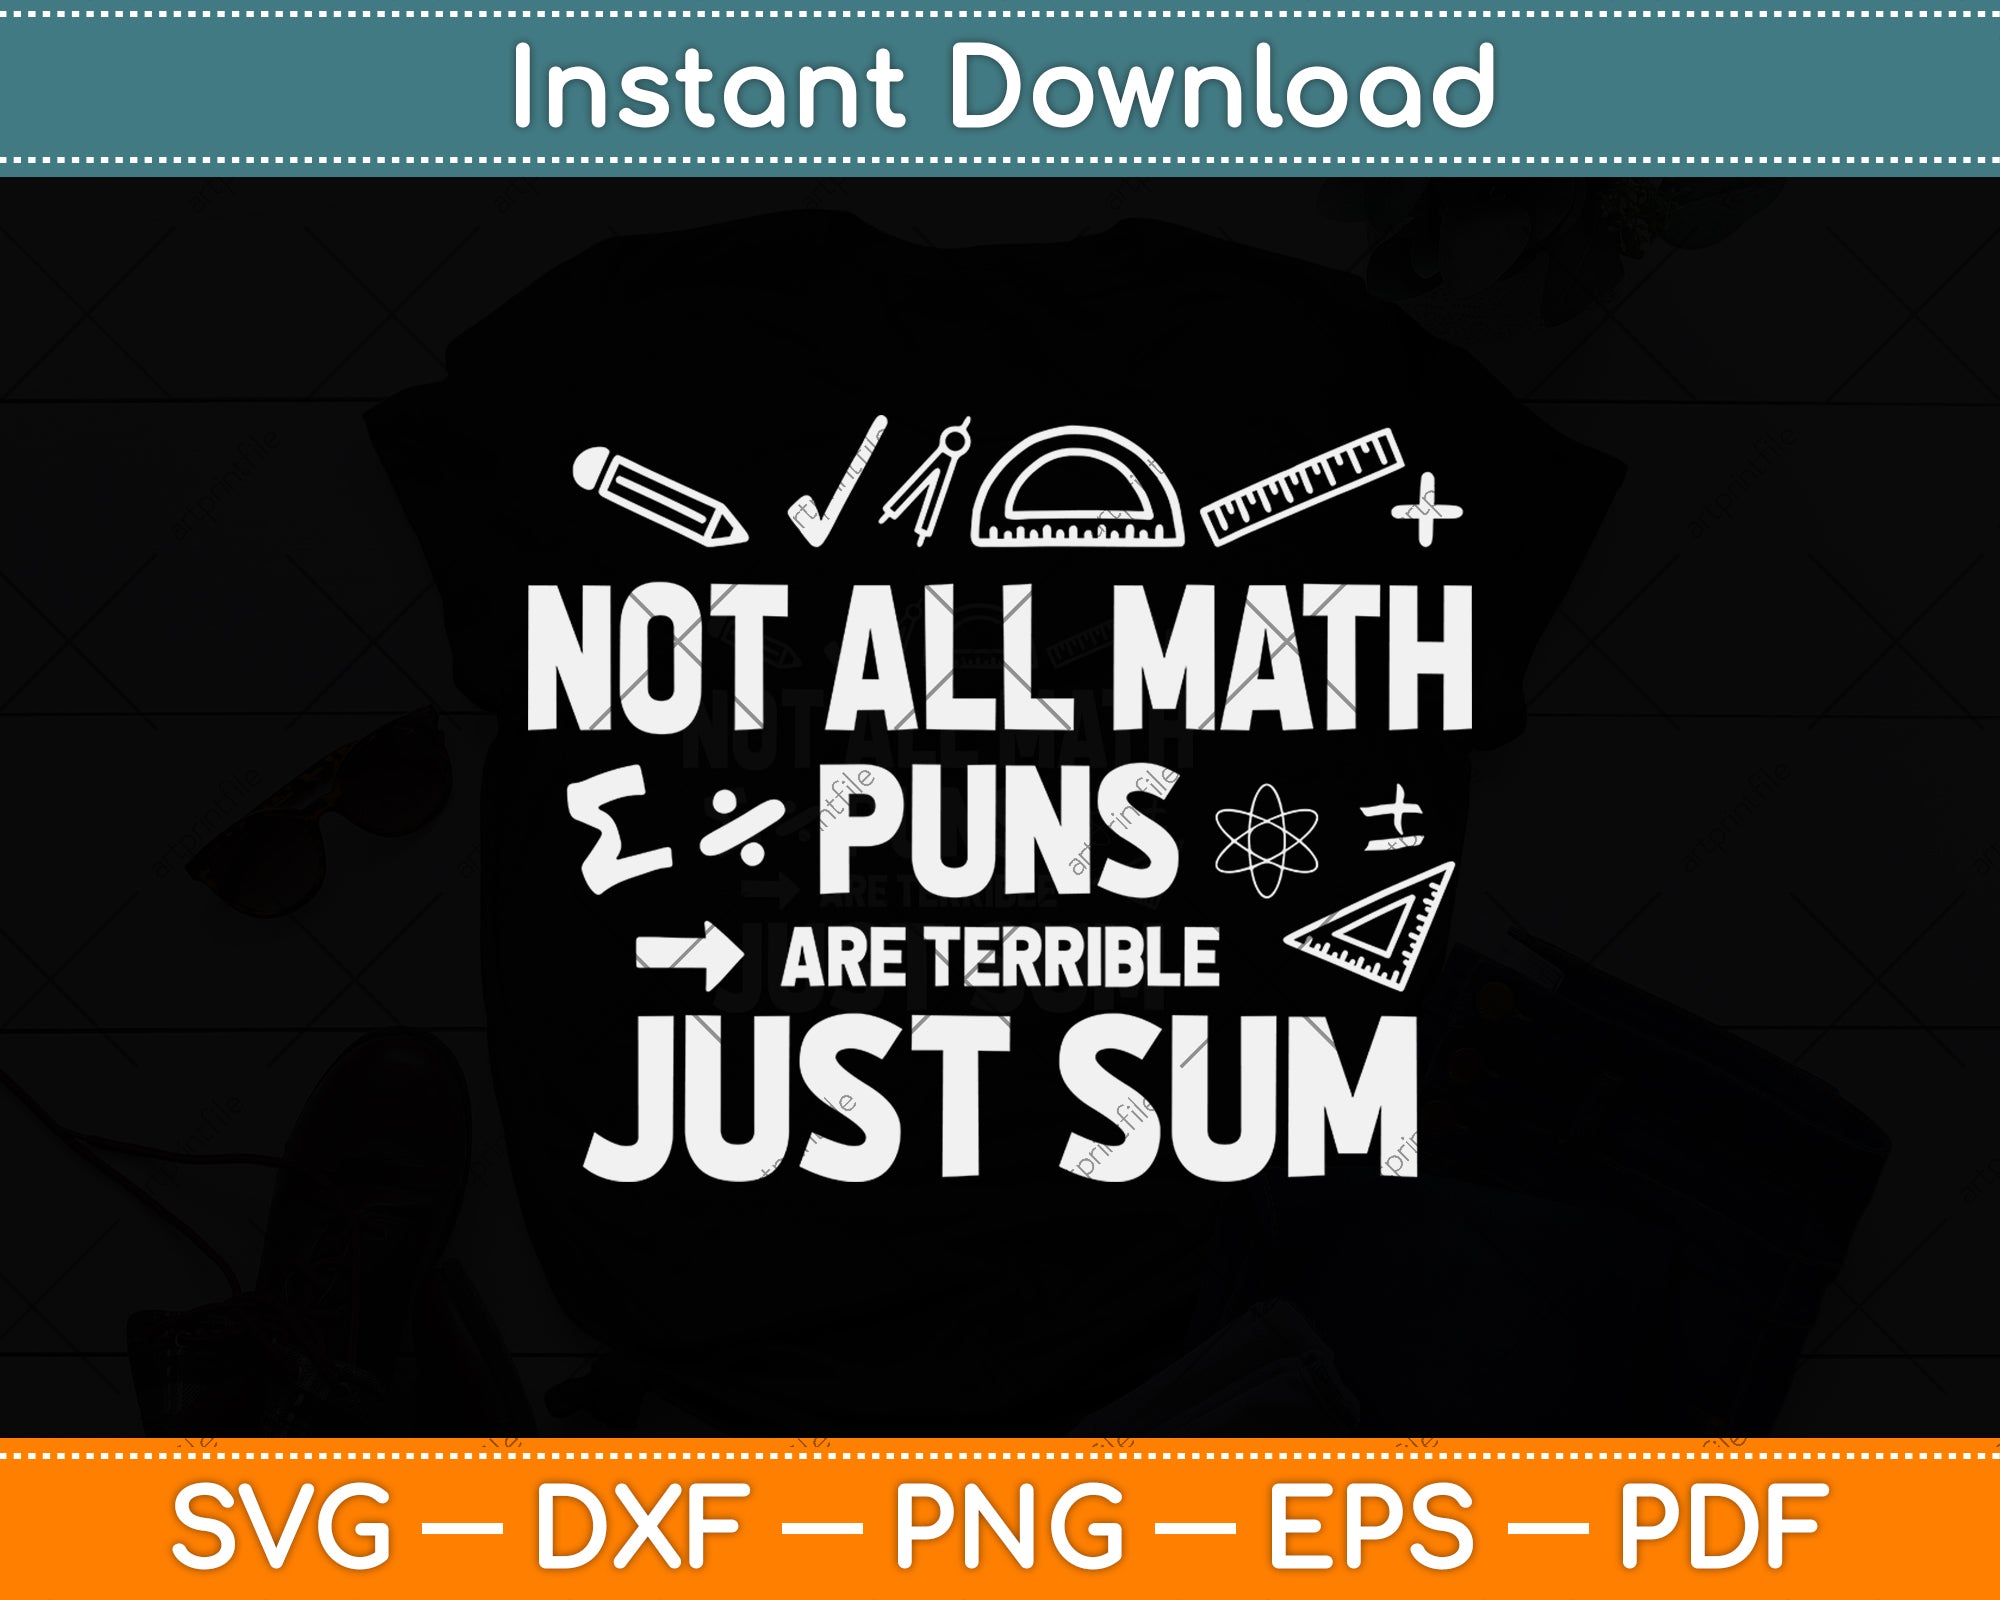 math puns